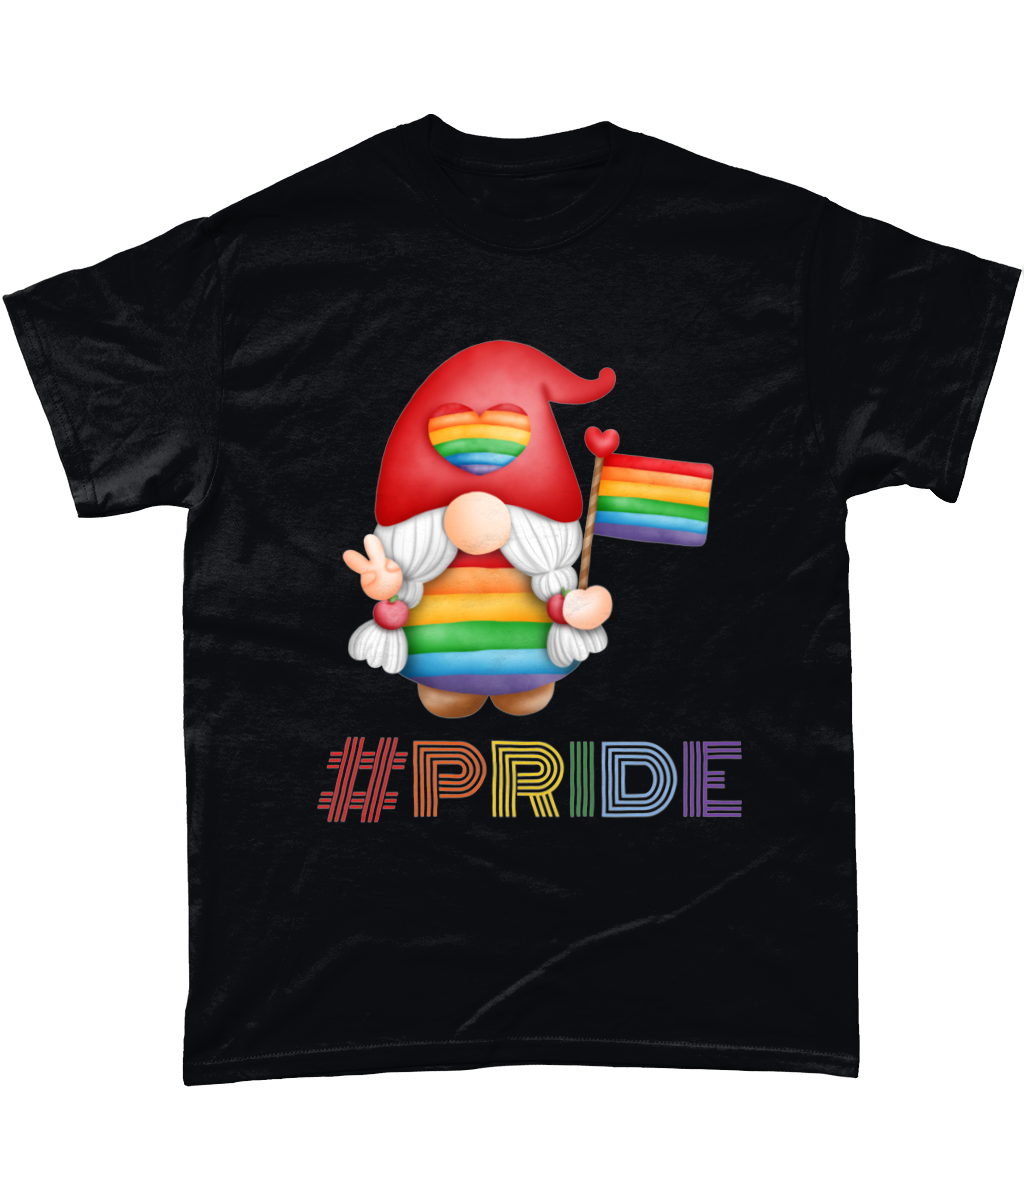 Gnome gay pride LGBTQIA T-shirt